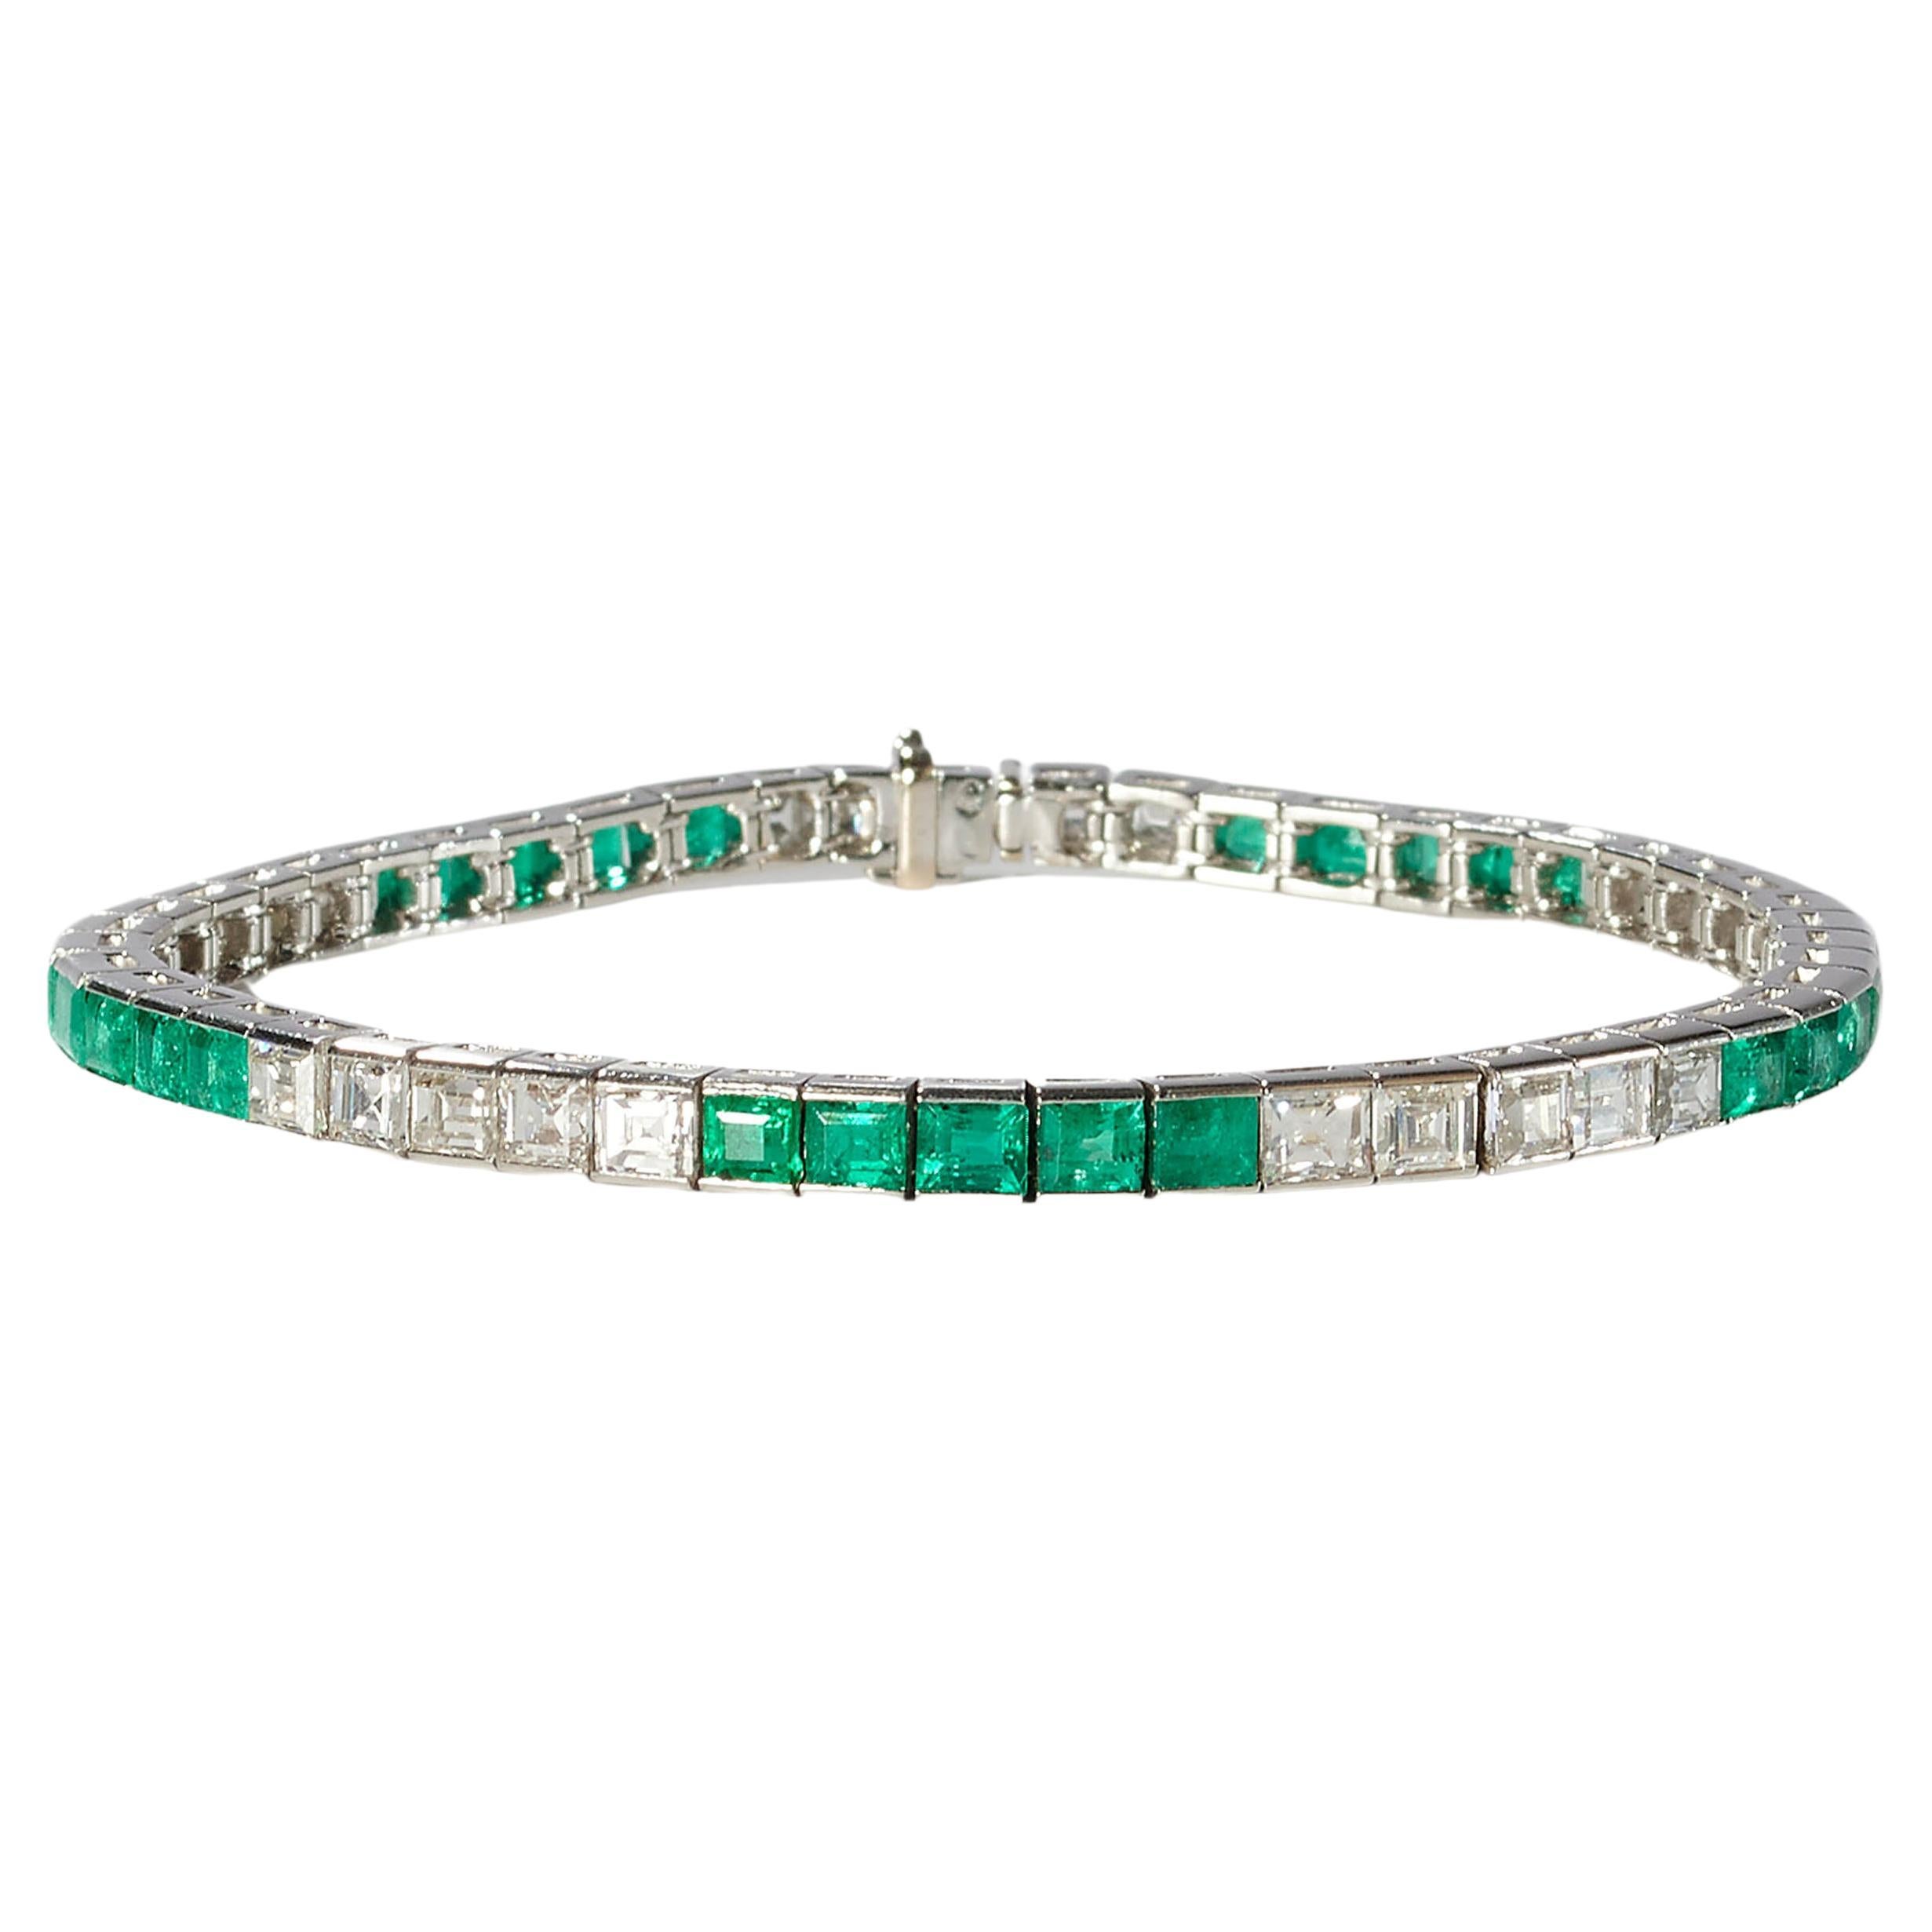 Armband aus Platin mit Smaragd, Diamanten und Platin, um 2000